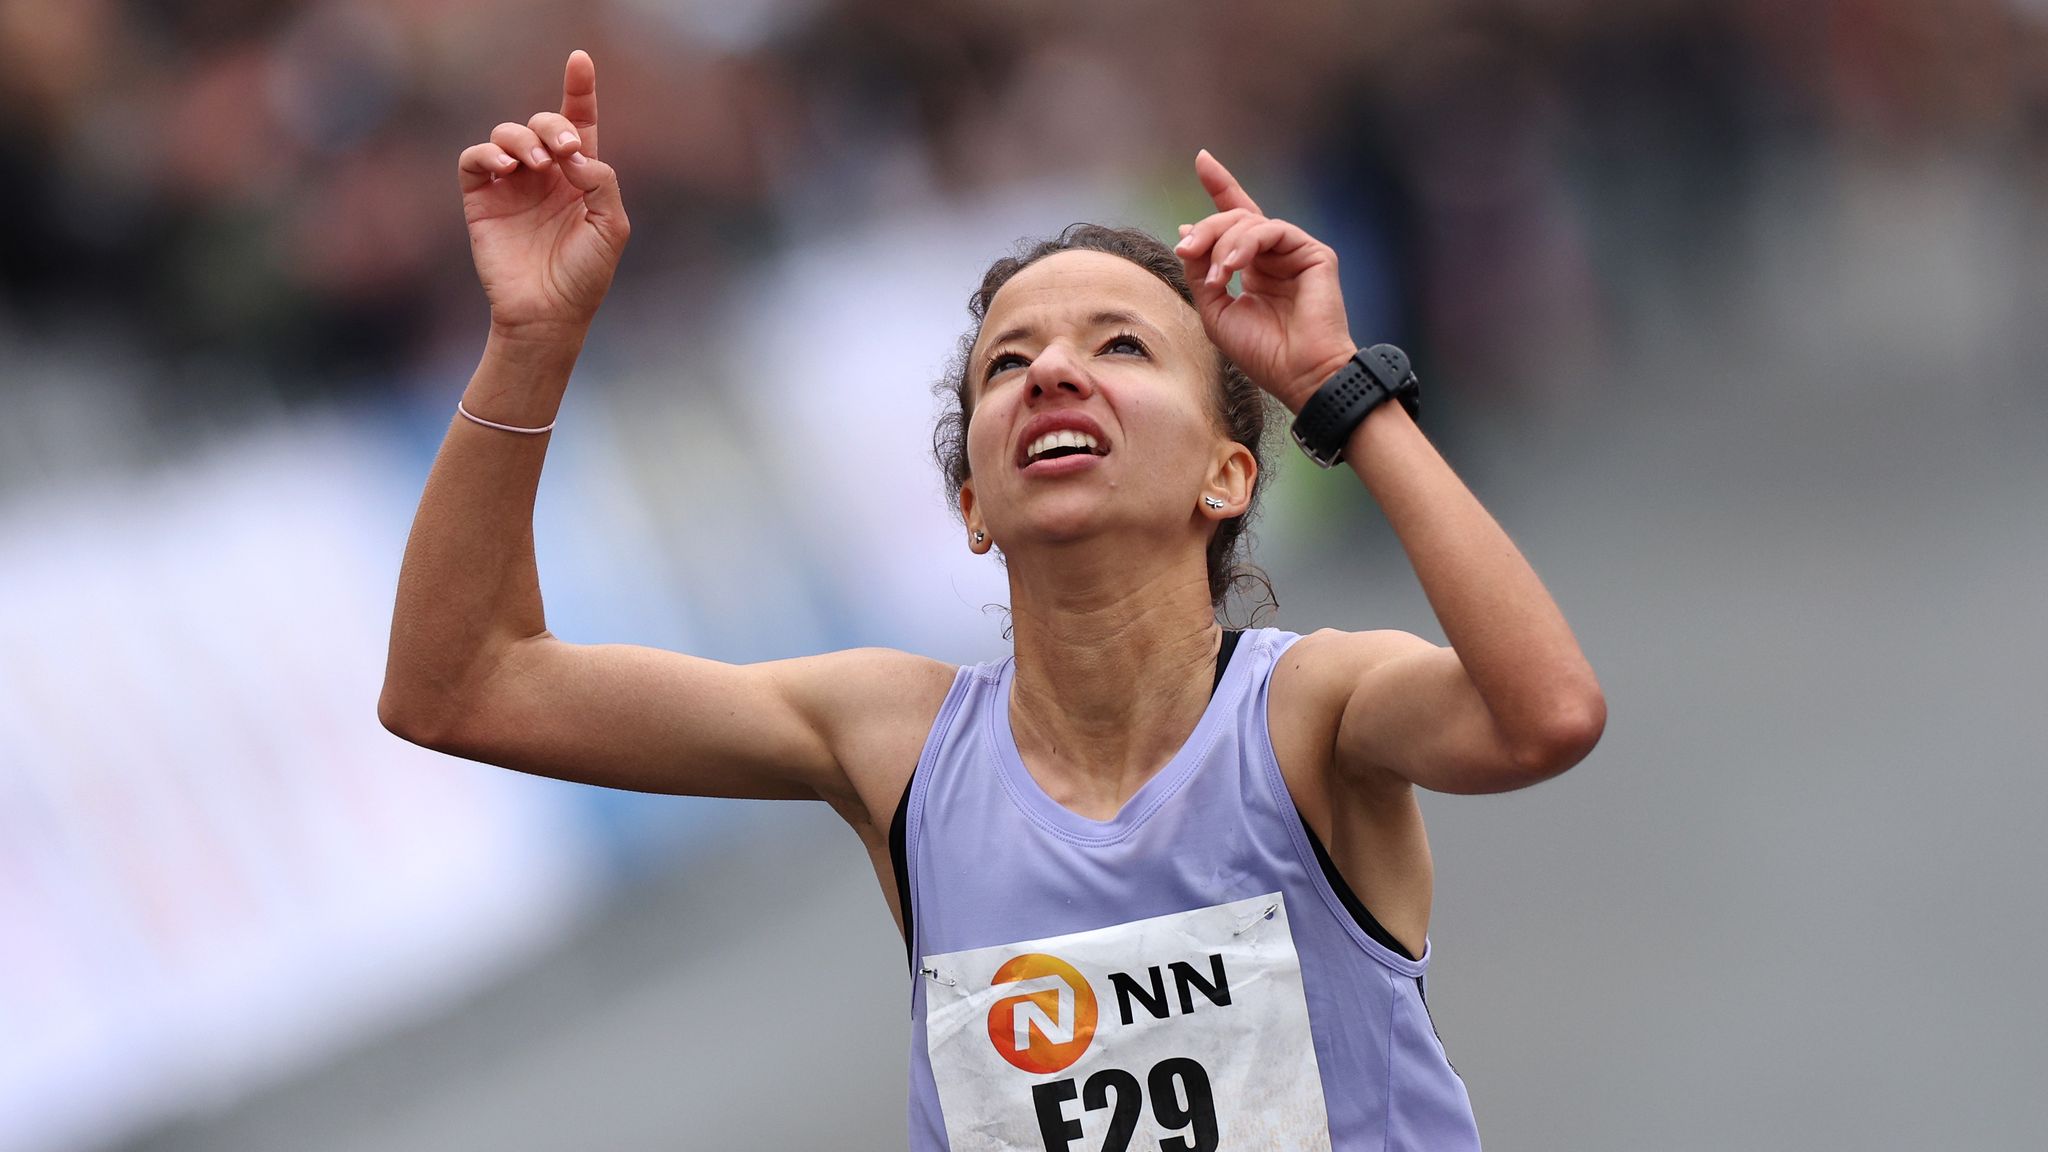 El viaje de Fátima Ouhaddou a la élite mundial de maratón